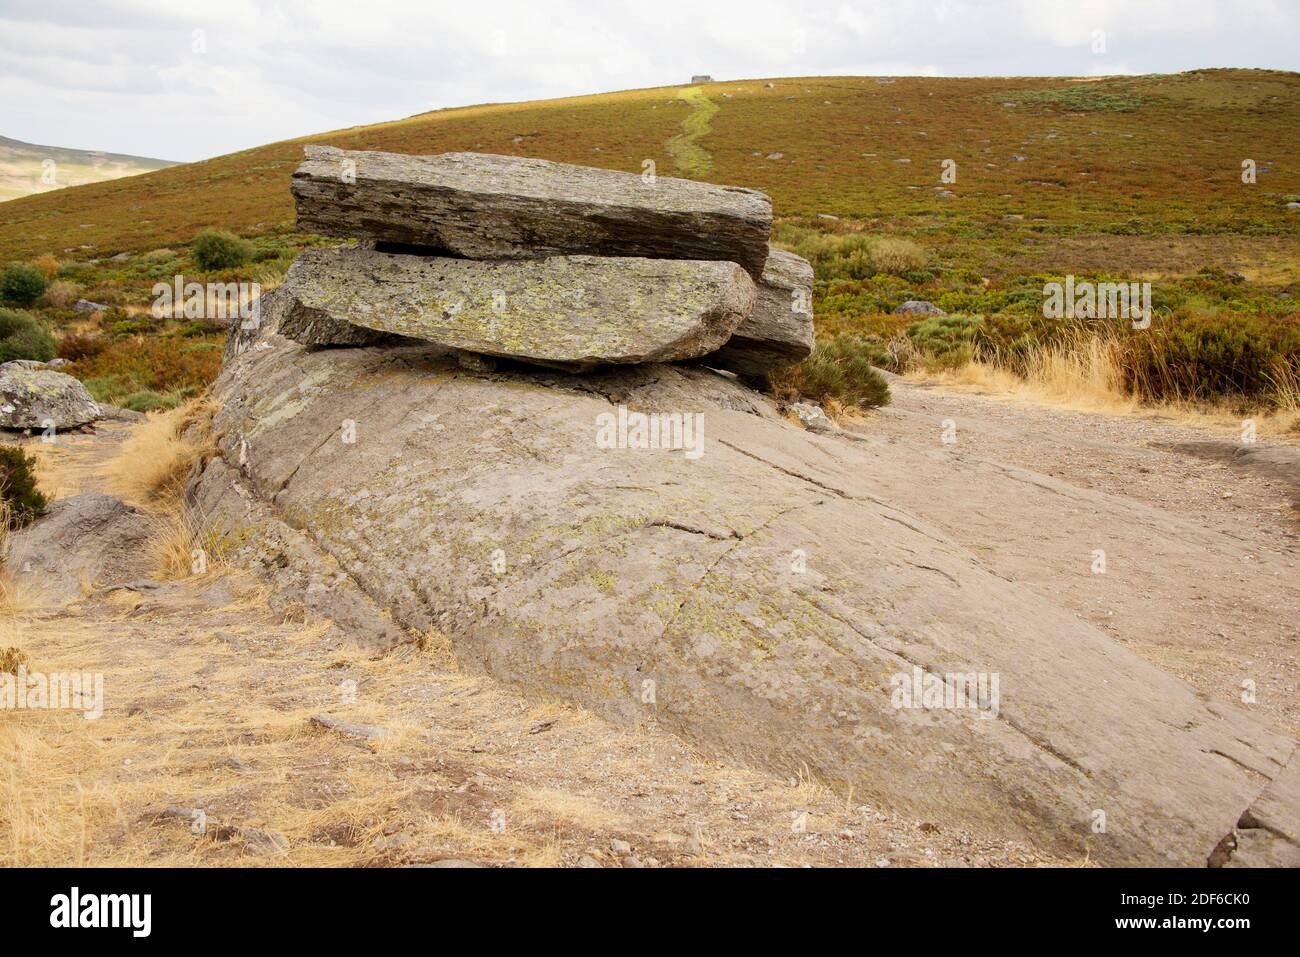 Glacial landform, sheepback with striations. Sanabria, Zamora, Castilla y Leon, Spain. Stock Photo